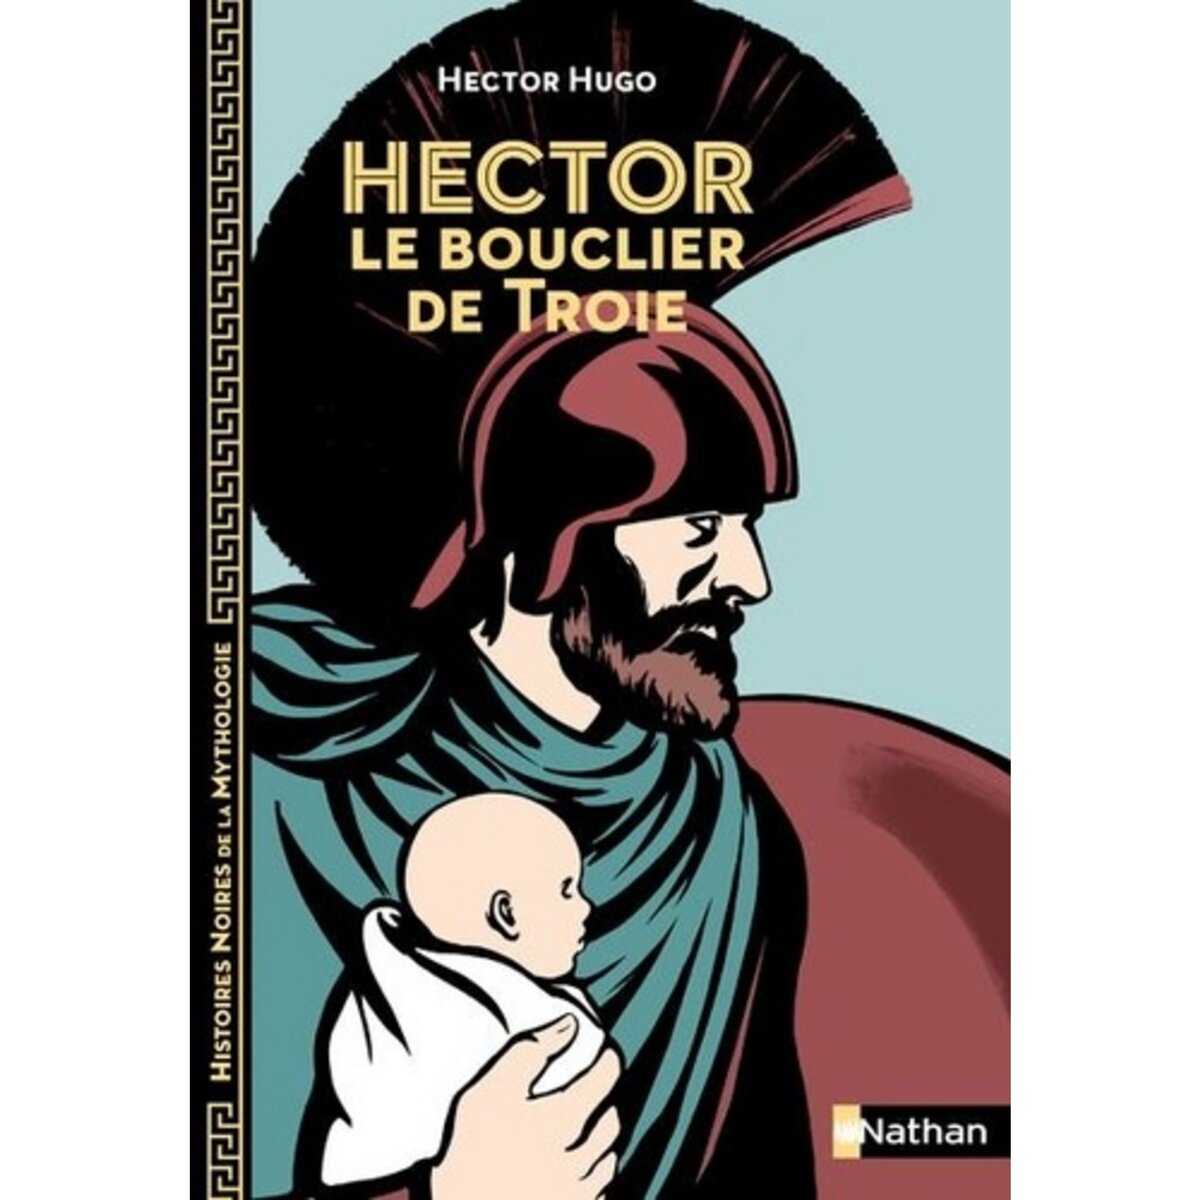  HECTOR, LE BOUCLIER DE TROIE, Hugo Hector